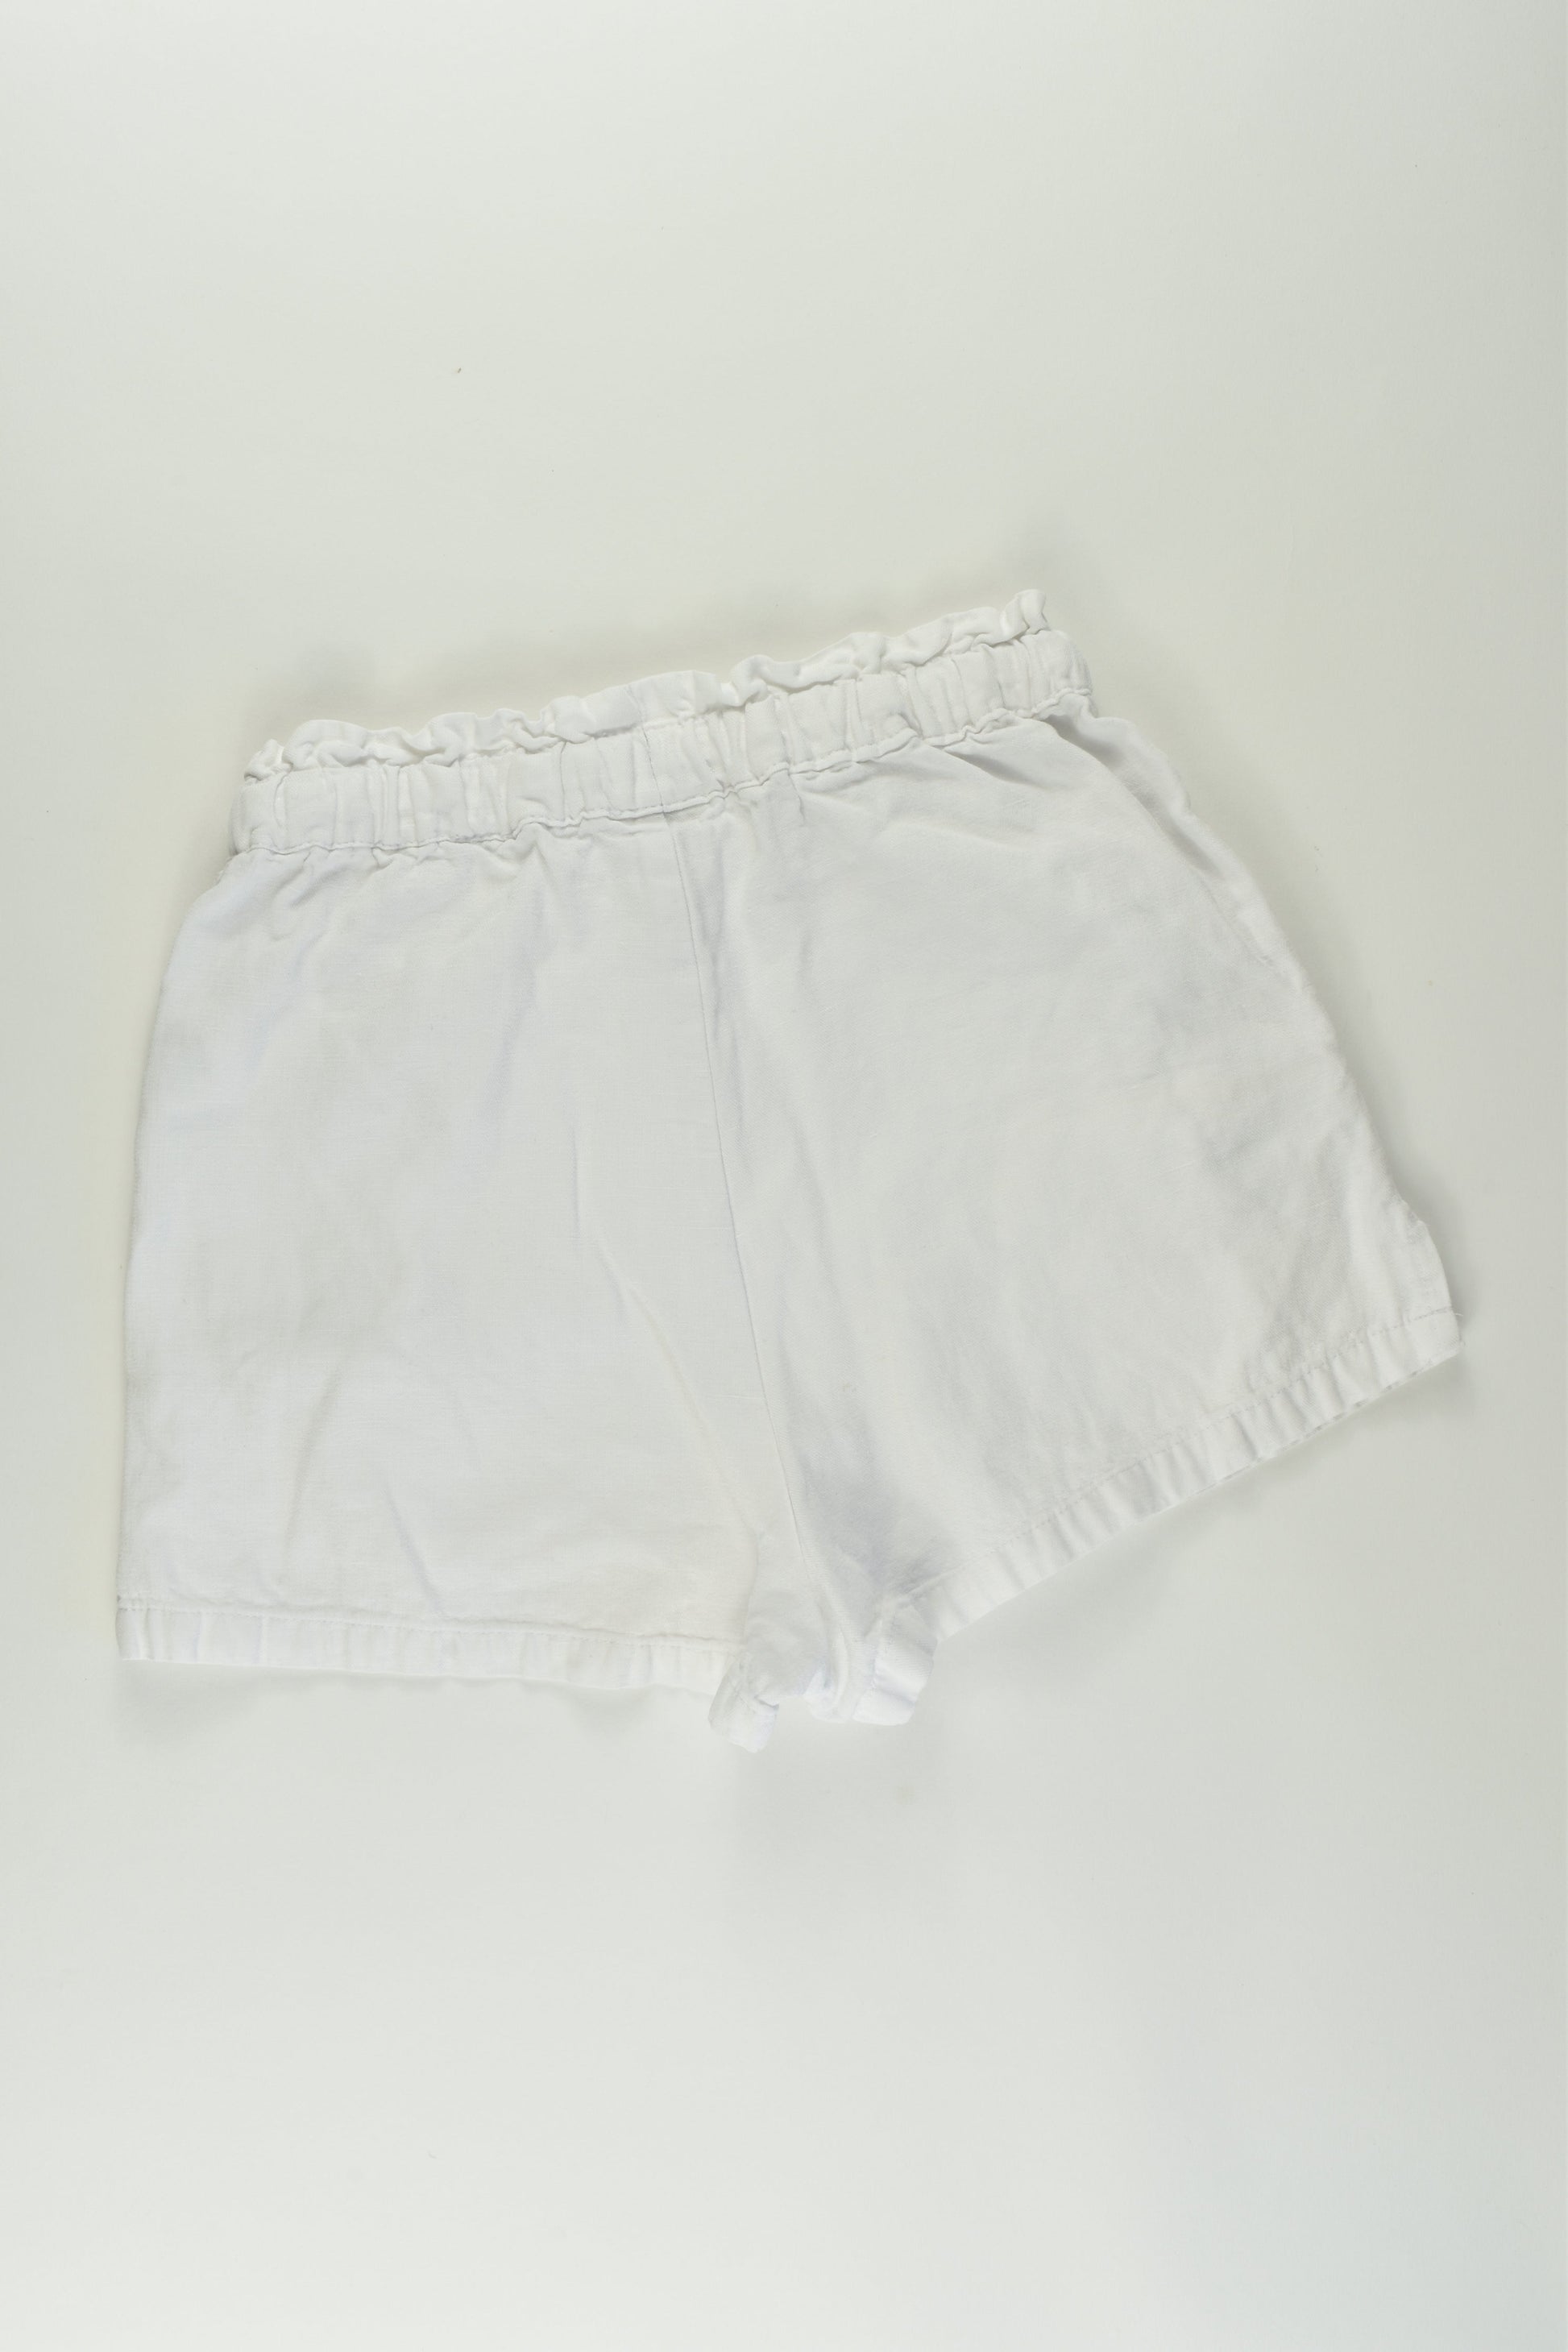 Seed Teen Size 8 Linen Blend Shorts